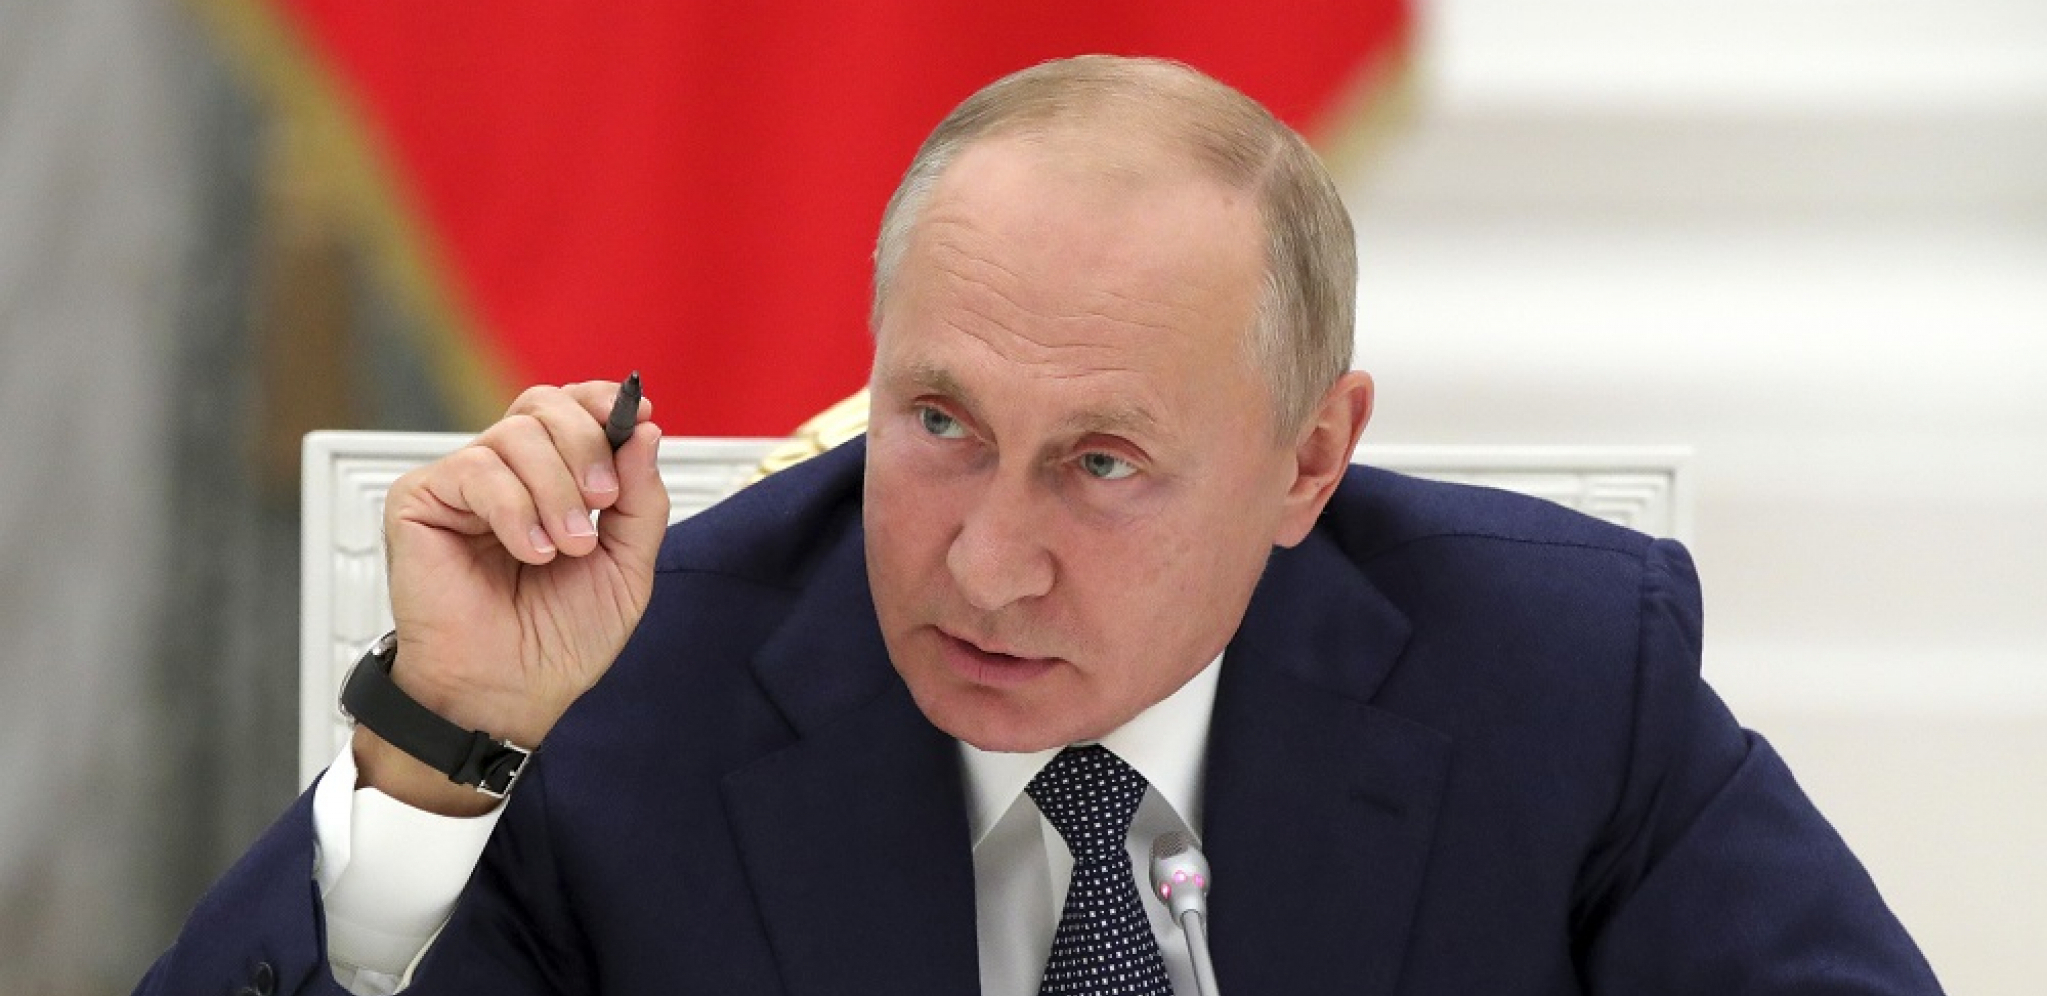 ČEKA SE "DAN D" Ova odluka Vladimira Putina će biti presudna